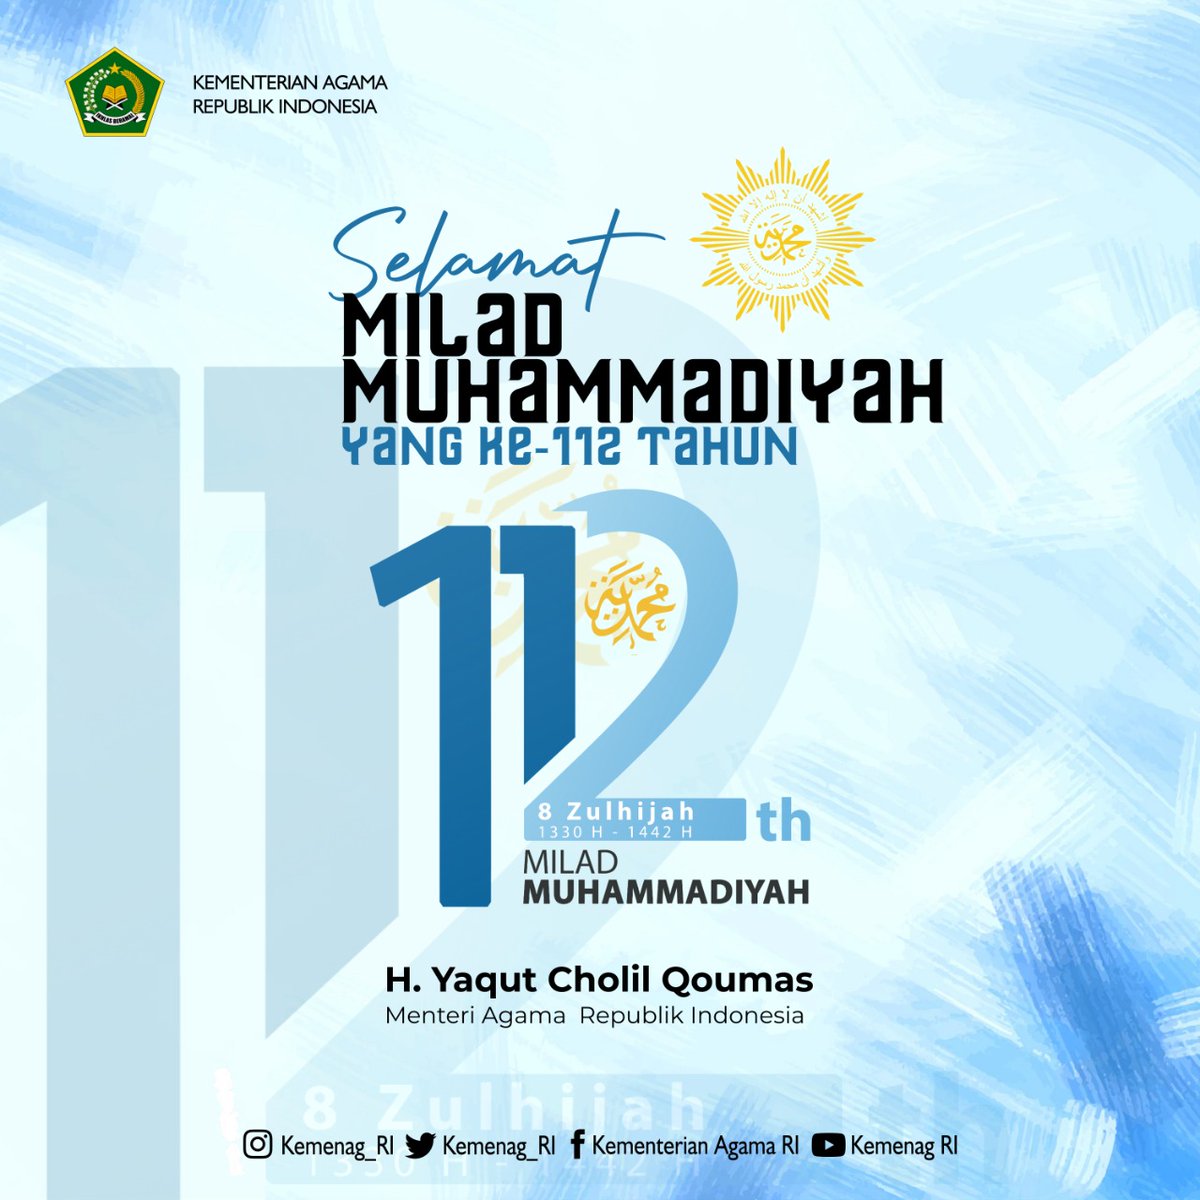 Ke muhammadiyah 112 milad logo Peringati Milad